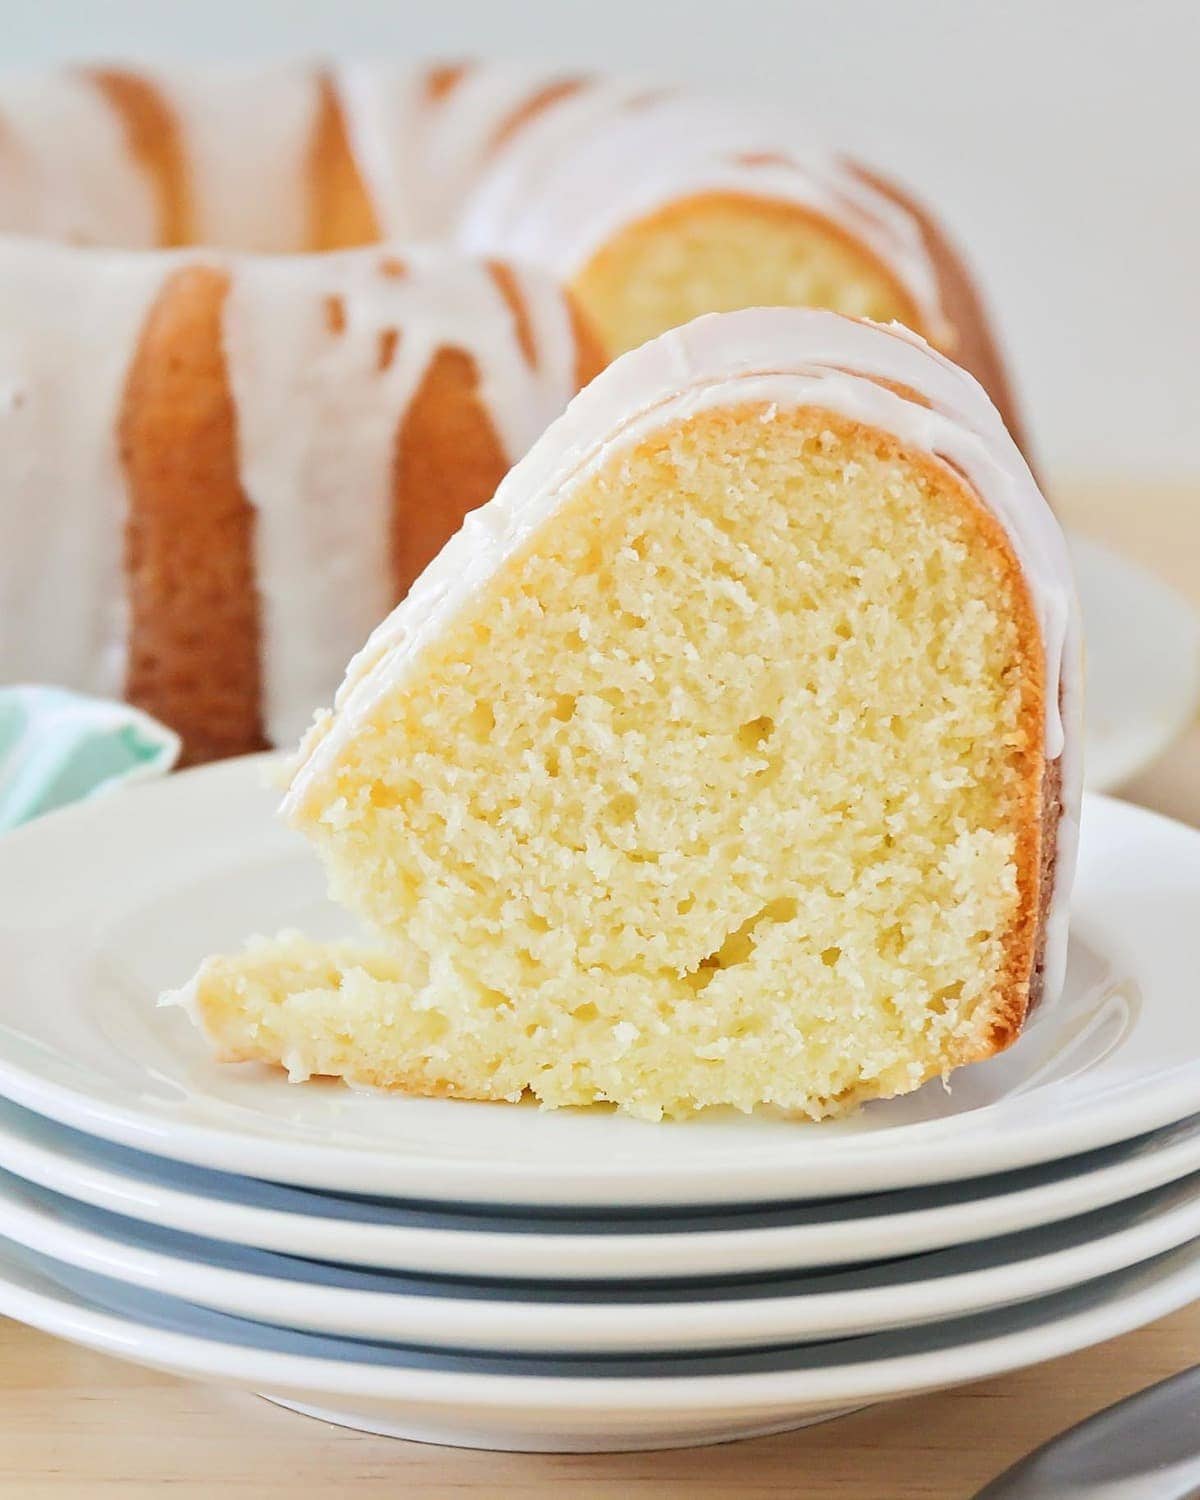 A slice of lemon pound cake with lemon glaze on top.